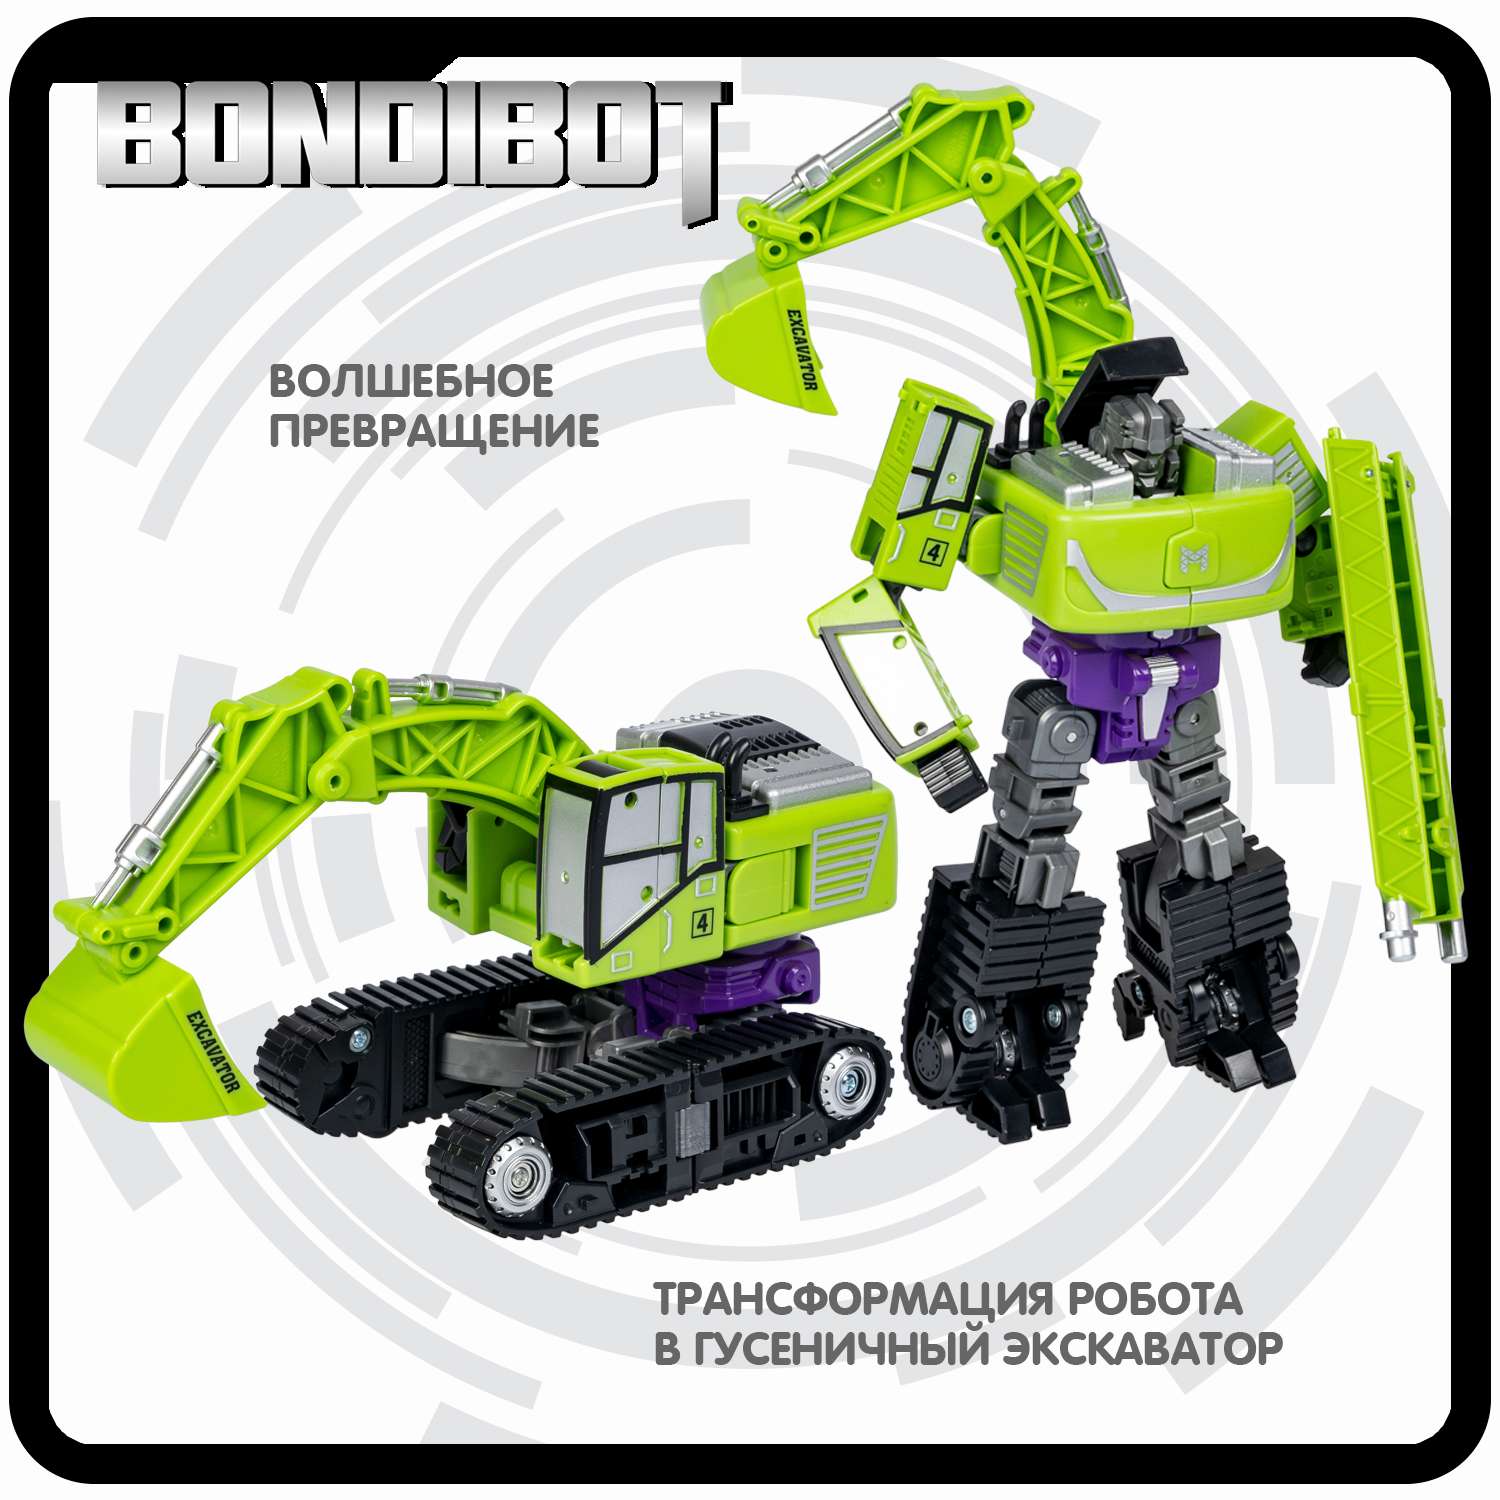 Трансформер BONDIBON BONDIBOT 2в1 робот- гусеничный экскаватор зелёного цвета - фото 4